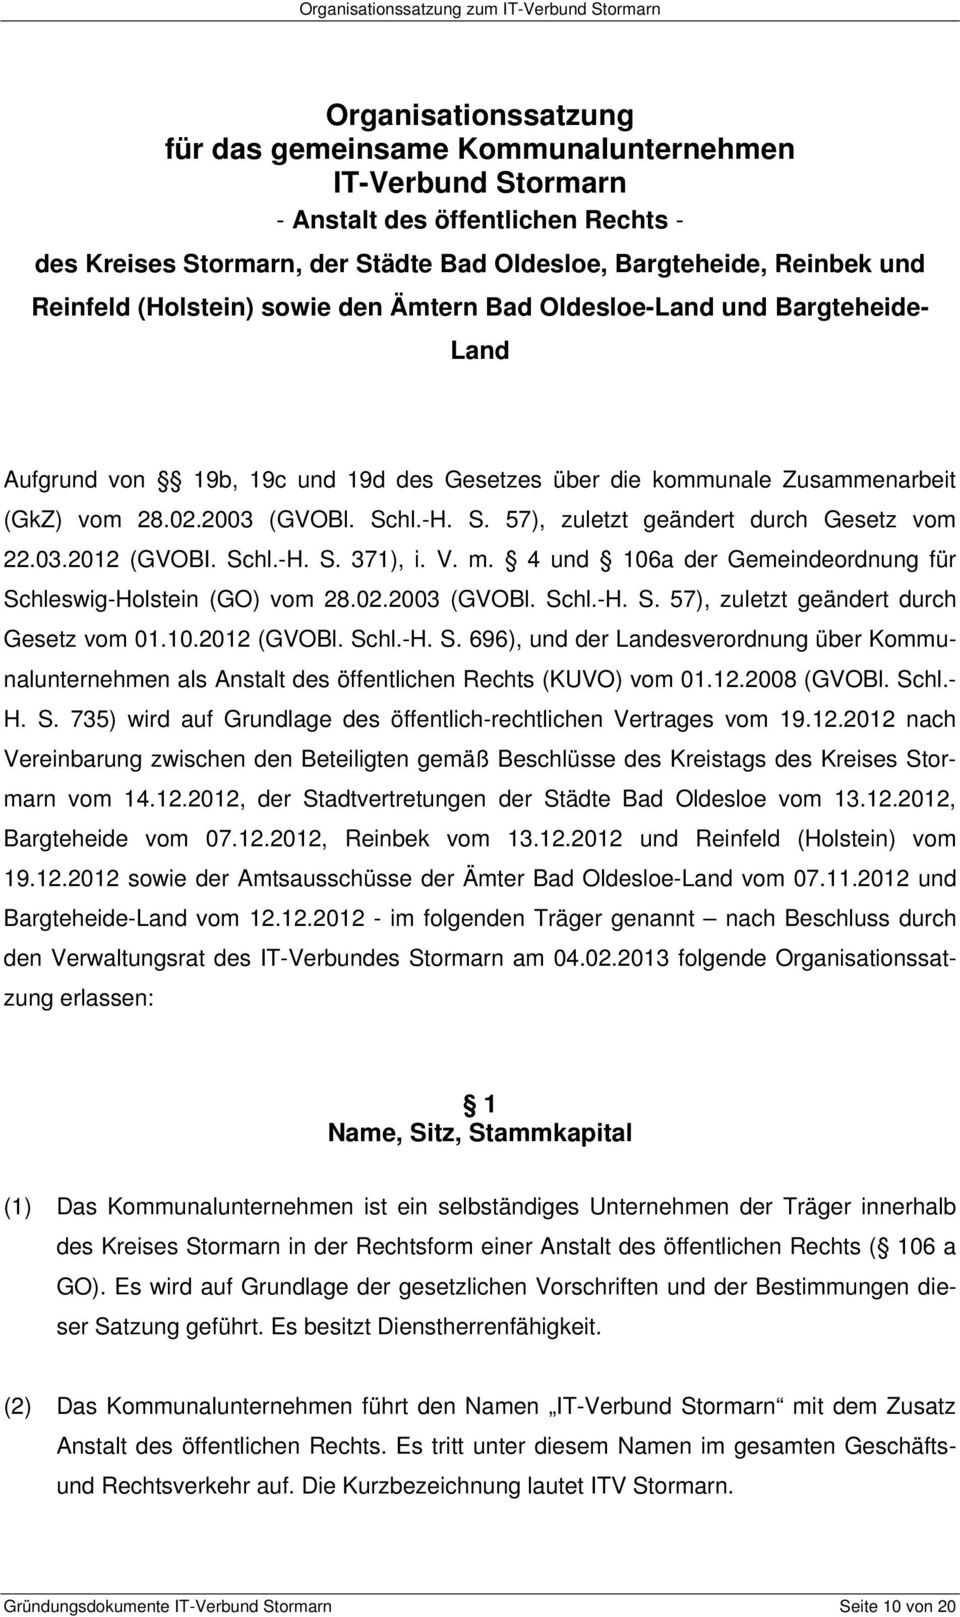 28.02.2003 (GVOBl. Schl.-H. S. 57), zuletzt geändert durch Gesetz vom 22.03.2012 (GVOBI. Schl.-H. S. 371), i. V. m. 4 und 106a der Gemeindeordnung für Schleswig-Holstein (GO) vom 28.02.2003 (GVOBl. Schl.-H. S. 57), zuletzt geändert durch Gesetz vom 01.